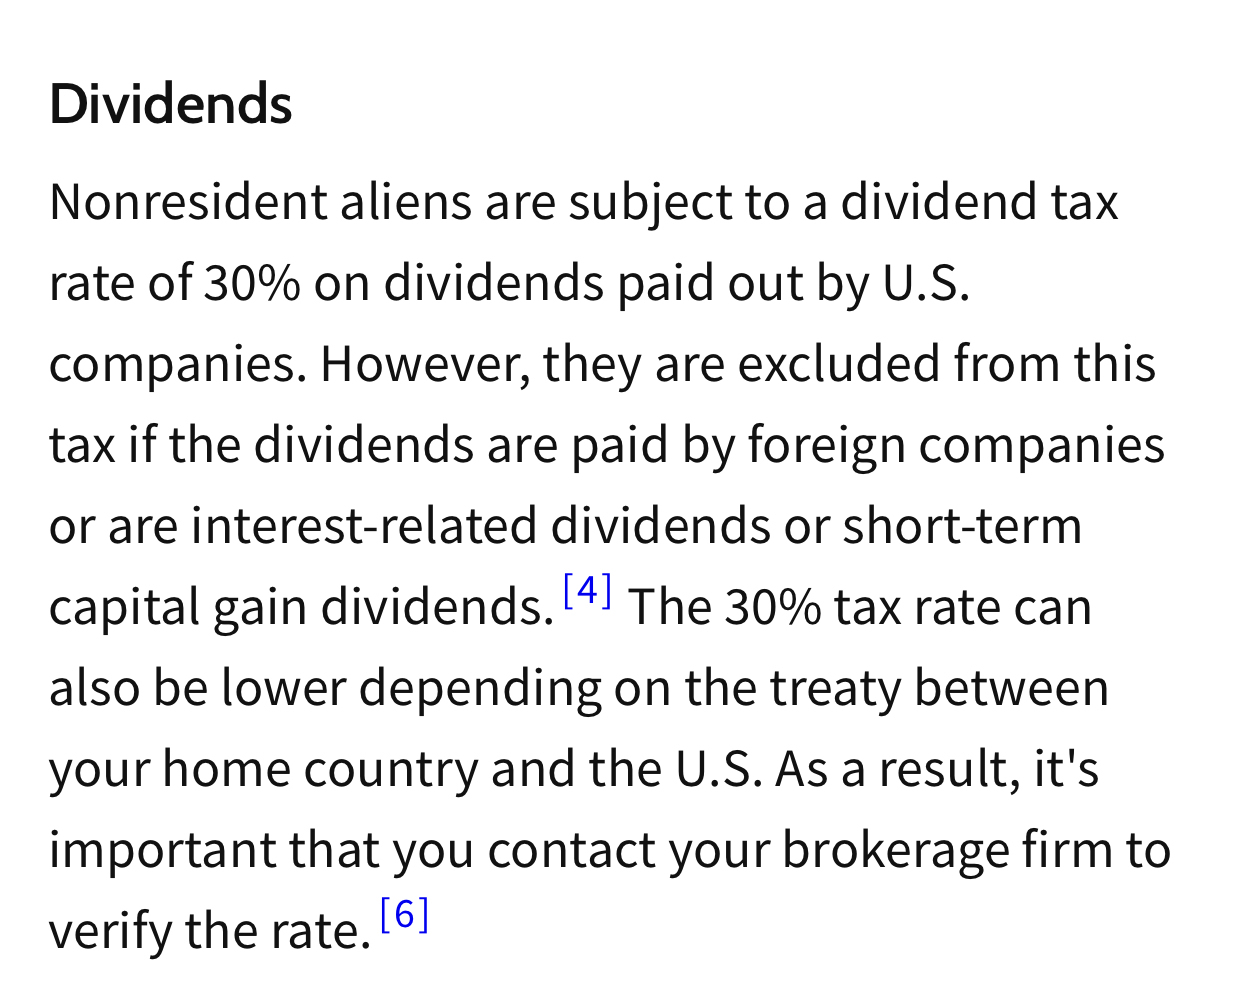 常見問題非美國居民的股息預扣稅